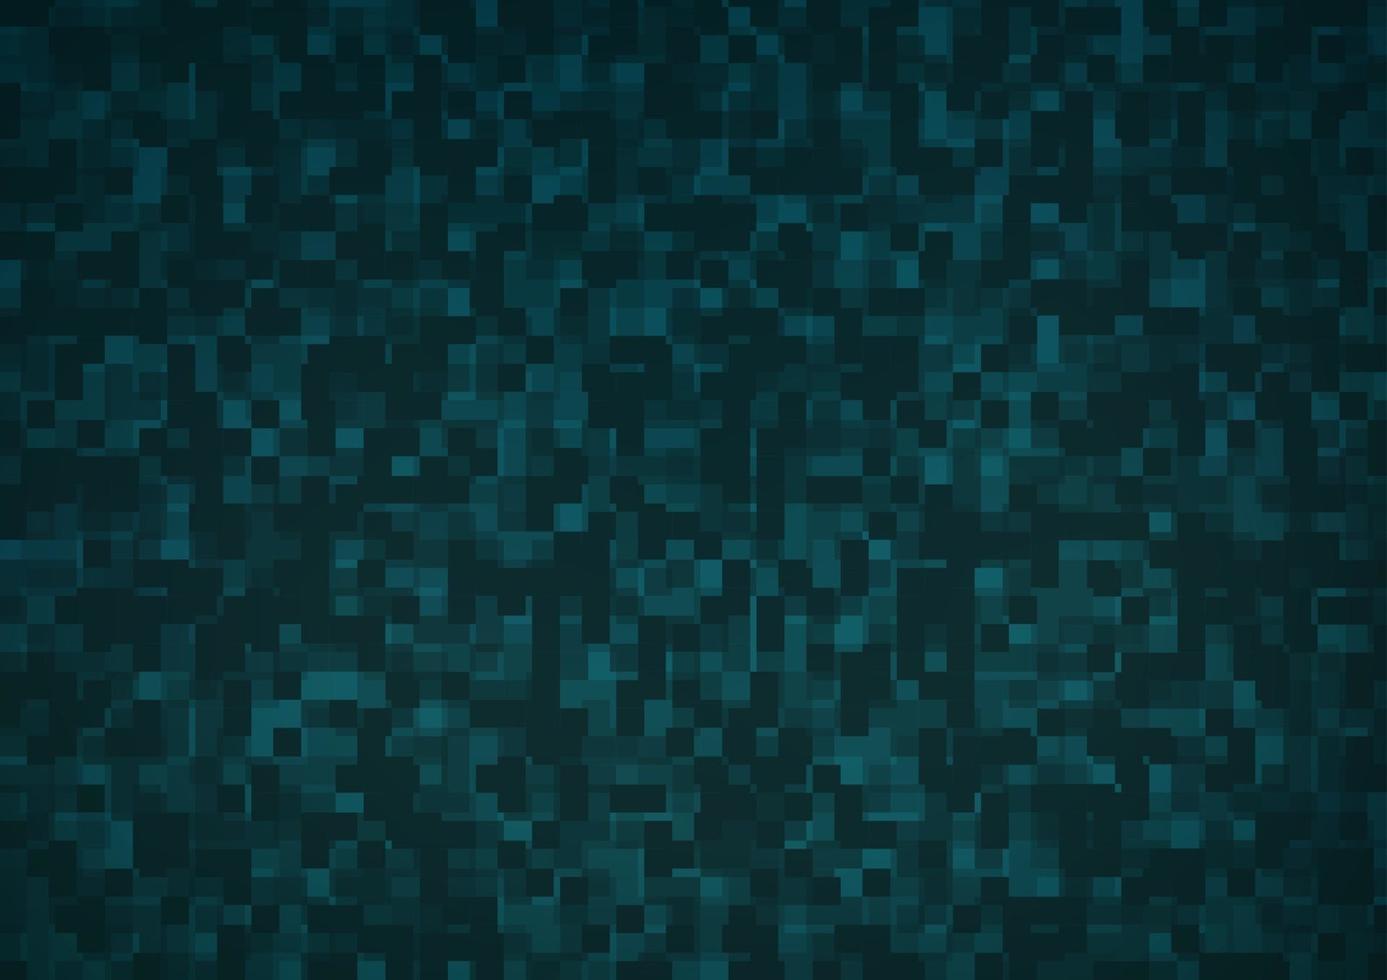 texture de vecteur bleu clair dans un style rectangulaire.